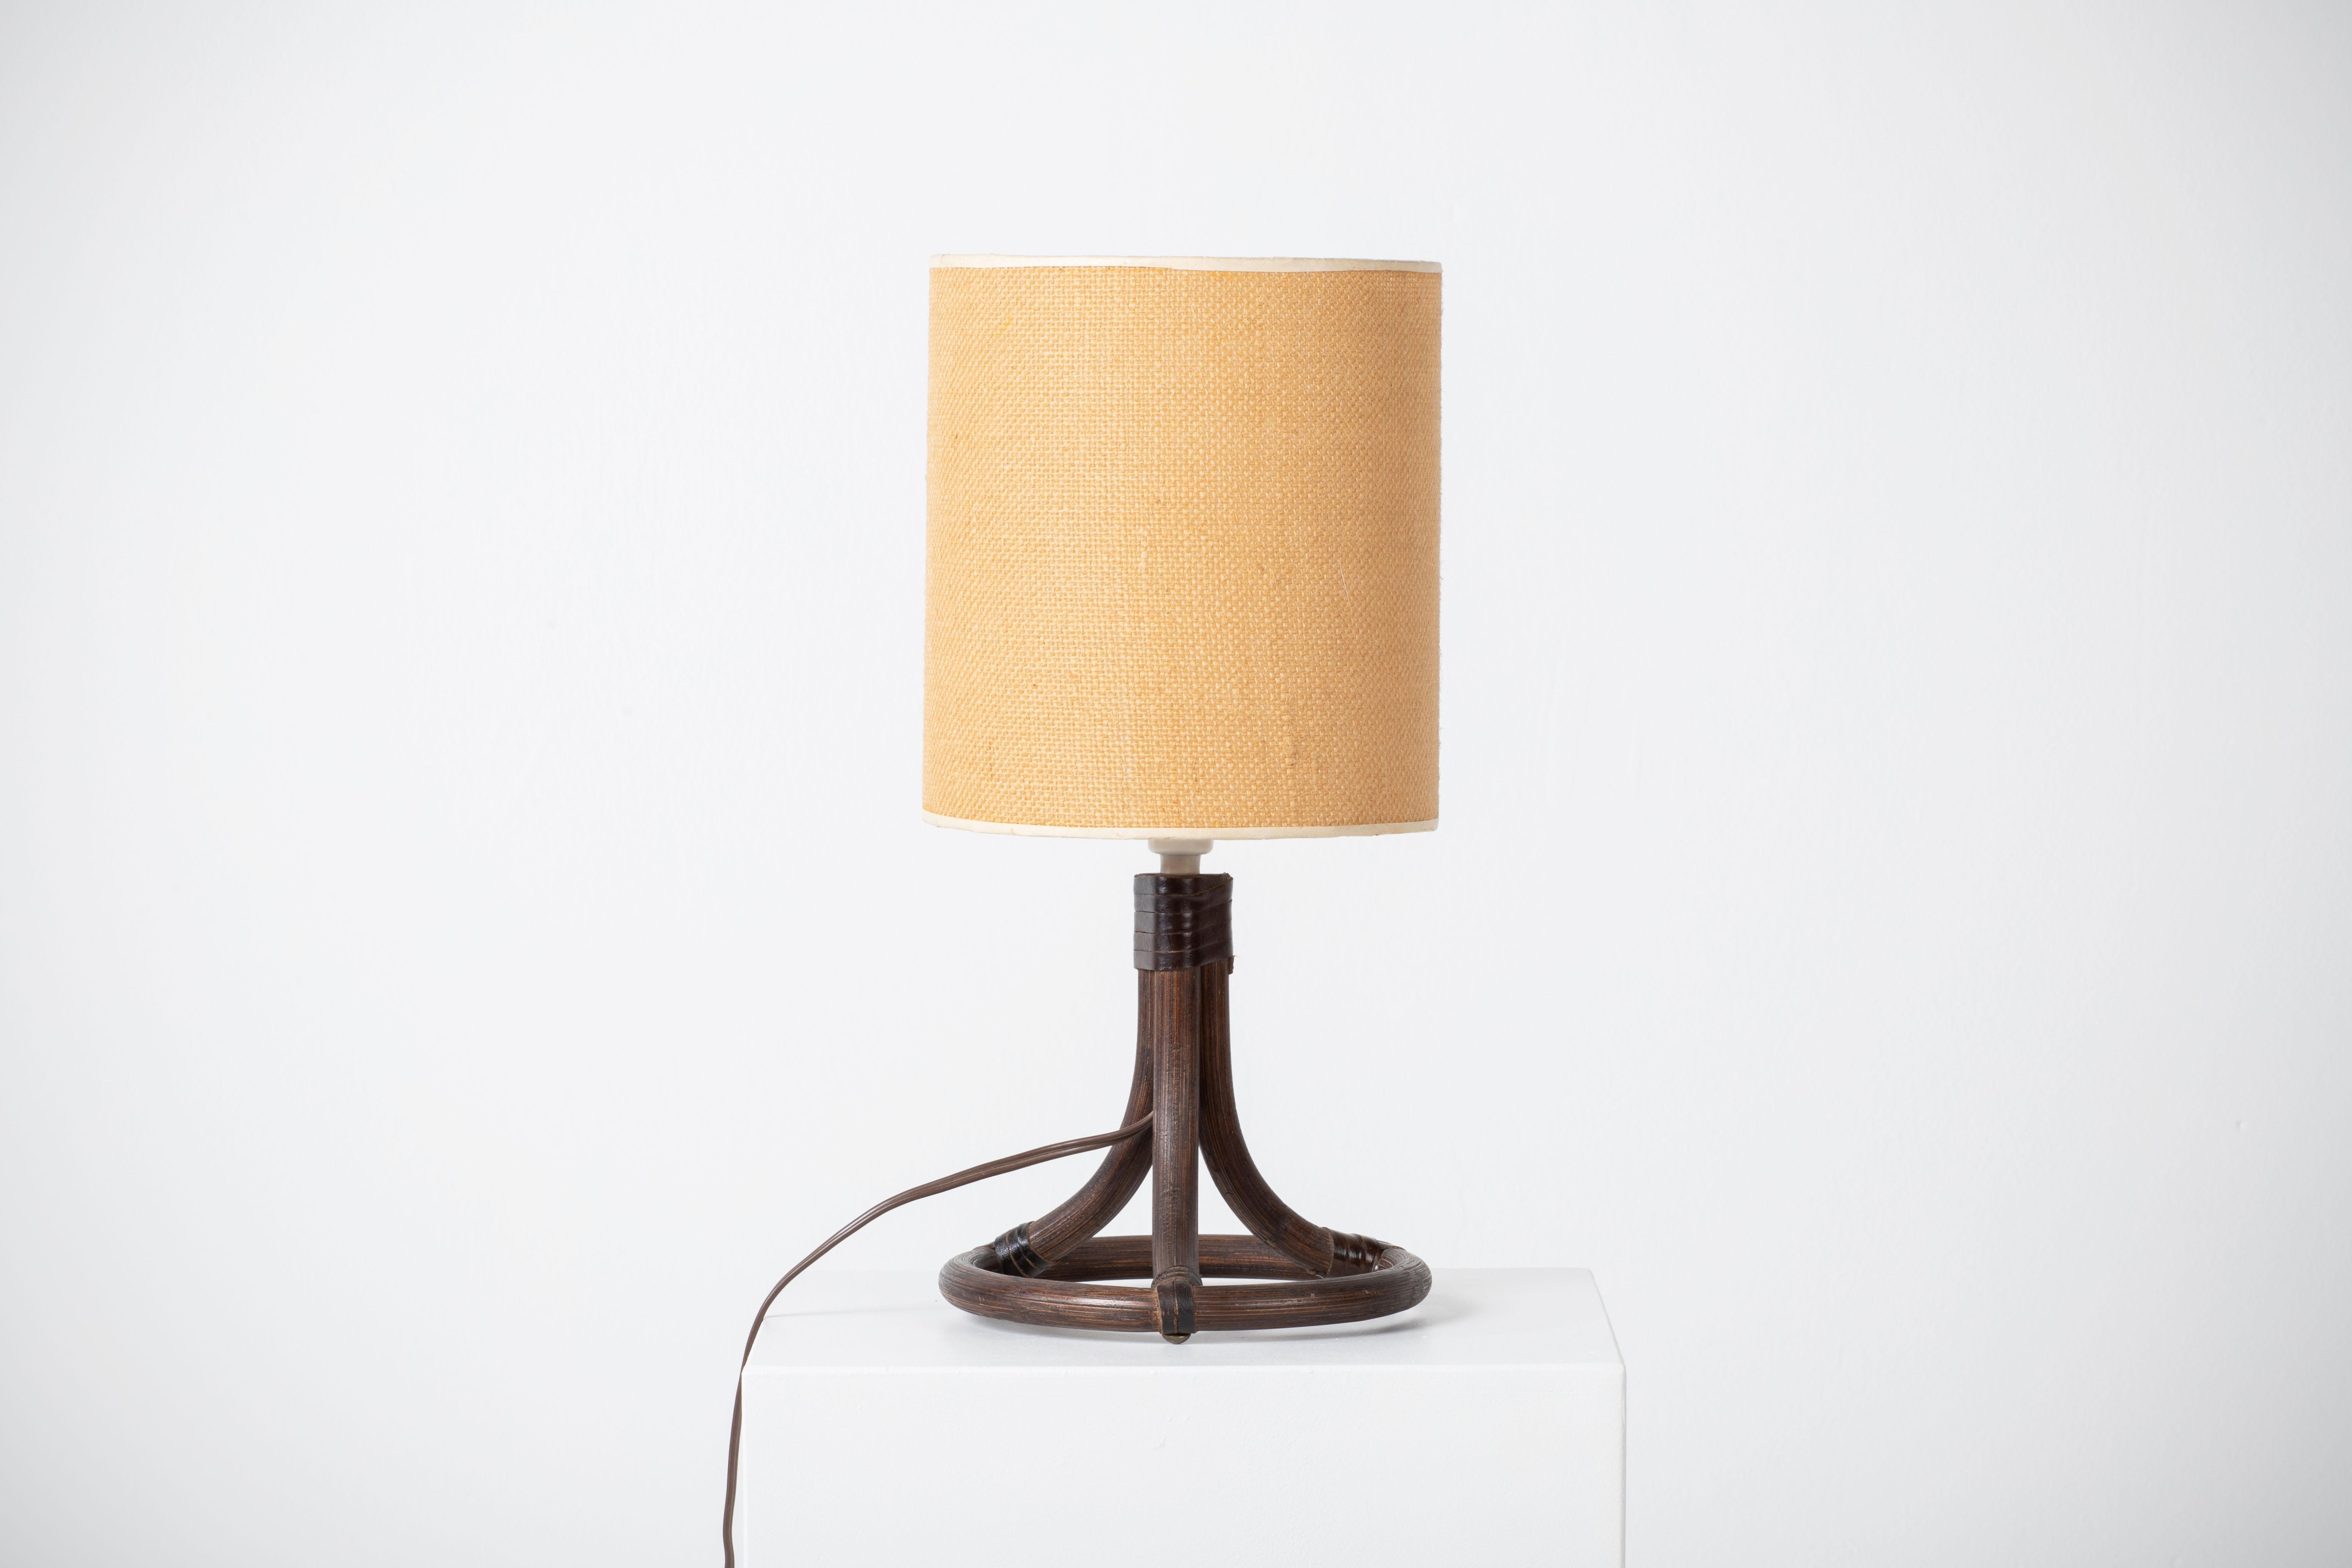 Uno Kristiansson, Lampes de table, Pin massif, Luxus, Suède, 1960s
Il est en bon état général et fonctionne parfaitement. La lampe offre une atmosphère chaleureuse.

Vendu avec abat-jour, hauteur totale 37 cm.